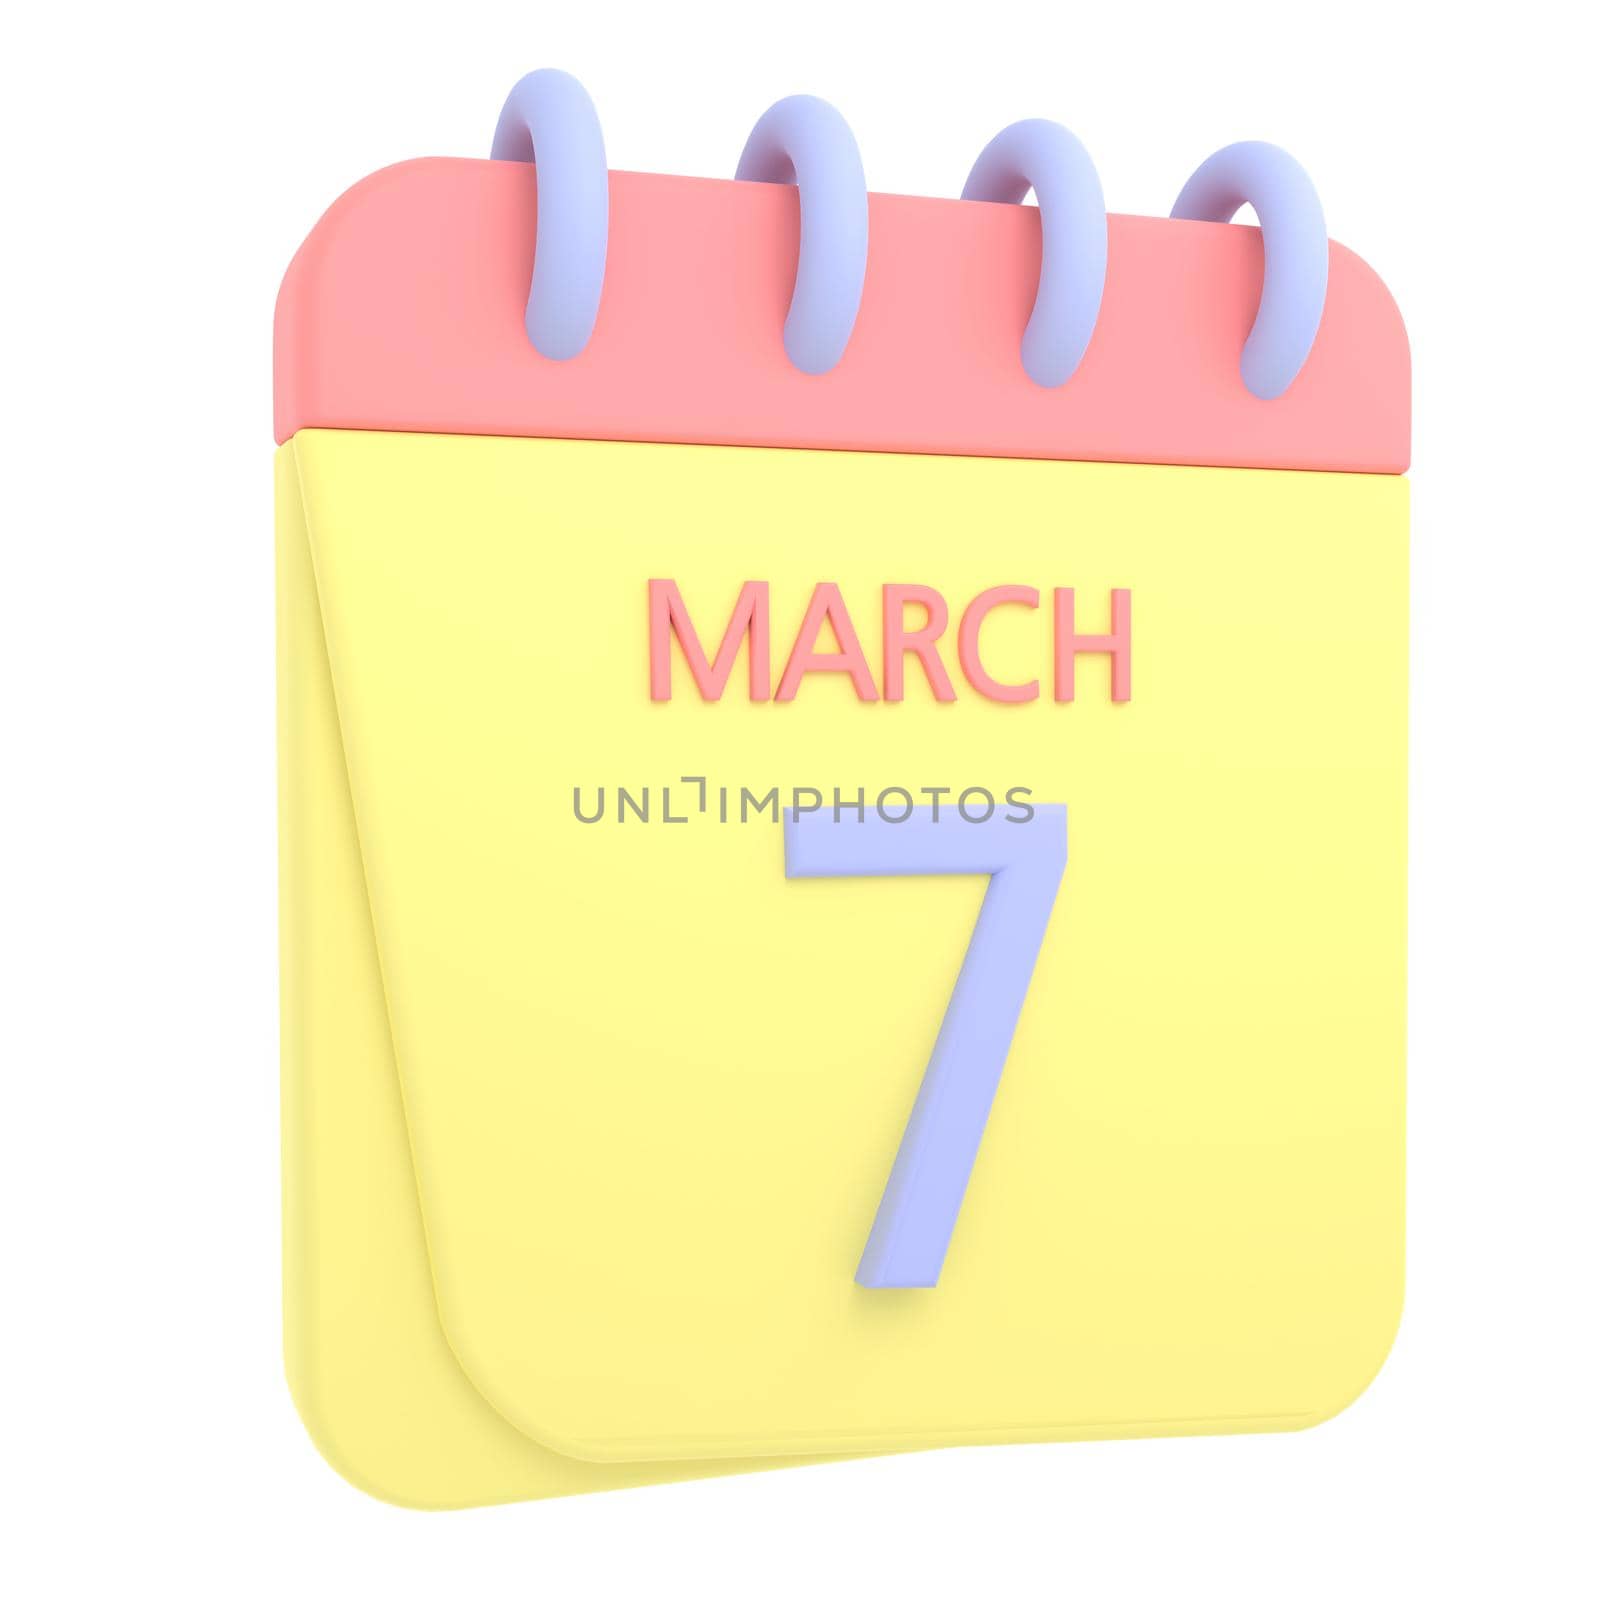 7th March 3D calendar icon by AnnaMarin